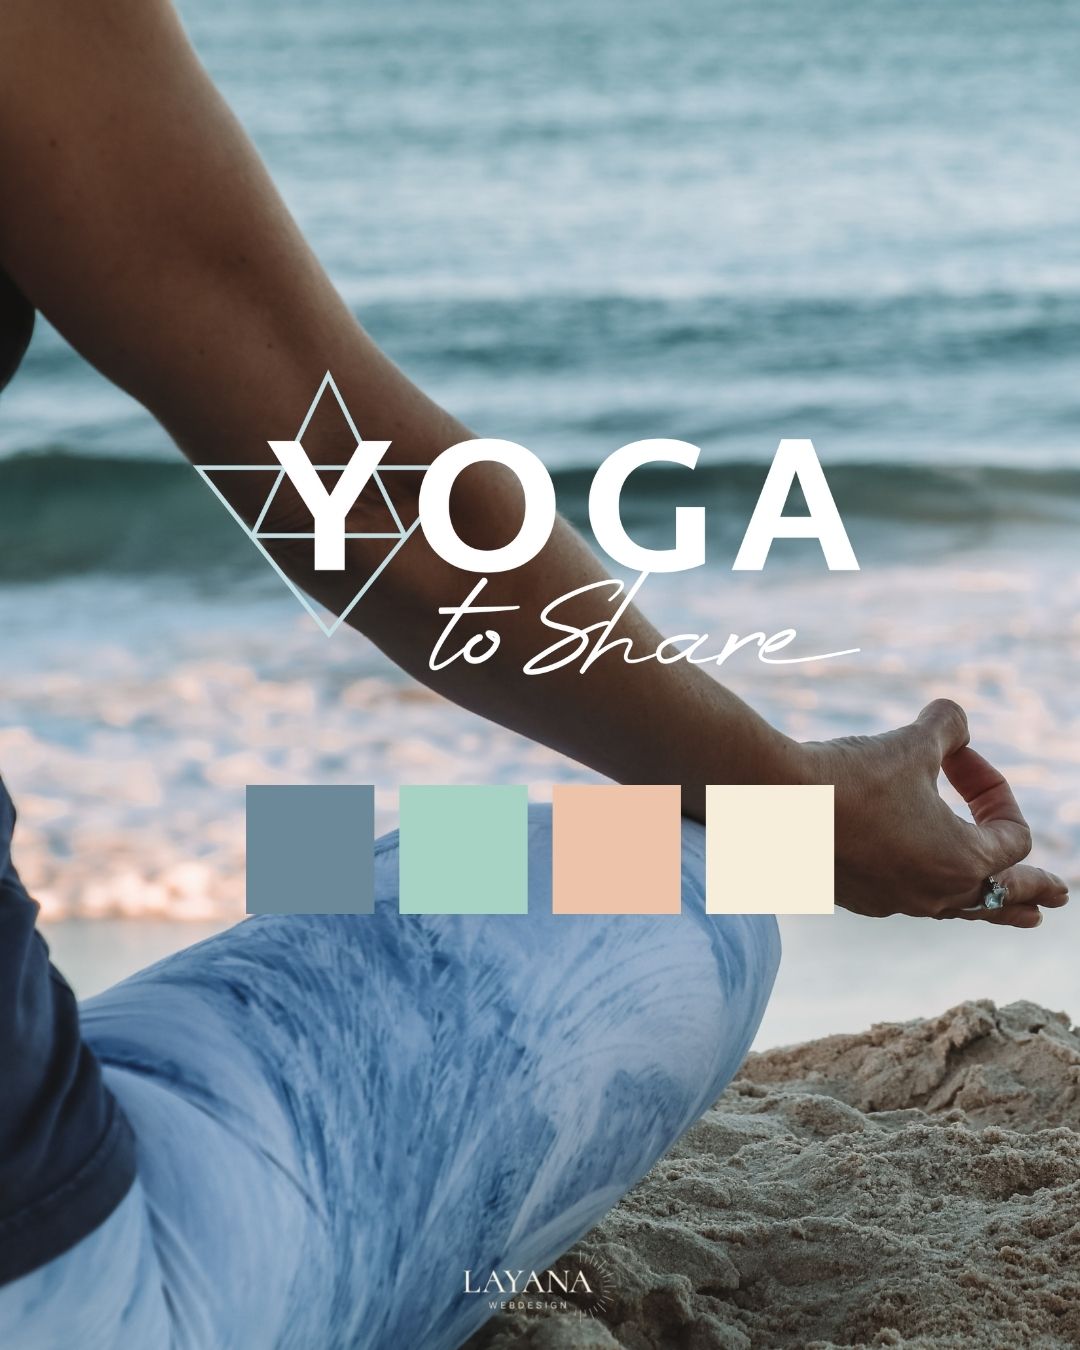 Modernes und frisches Branddesign Logo und Farbpalette für Yogastudio Yoga To Share